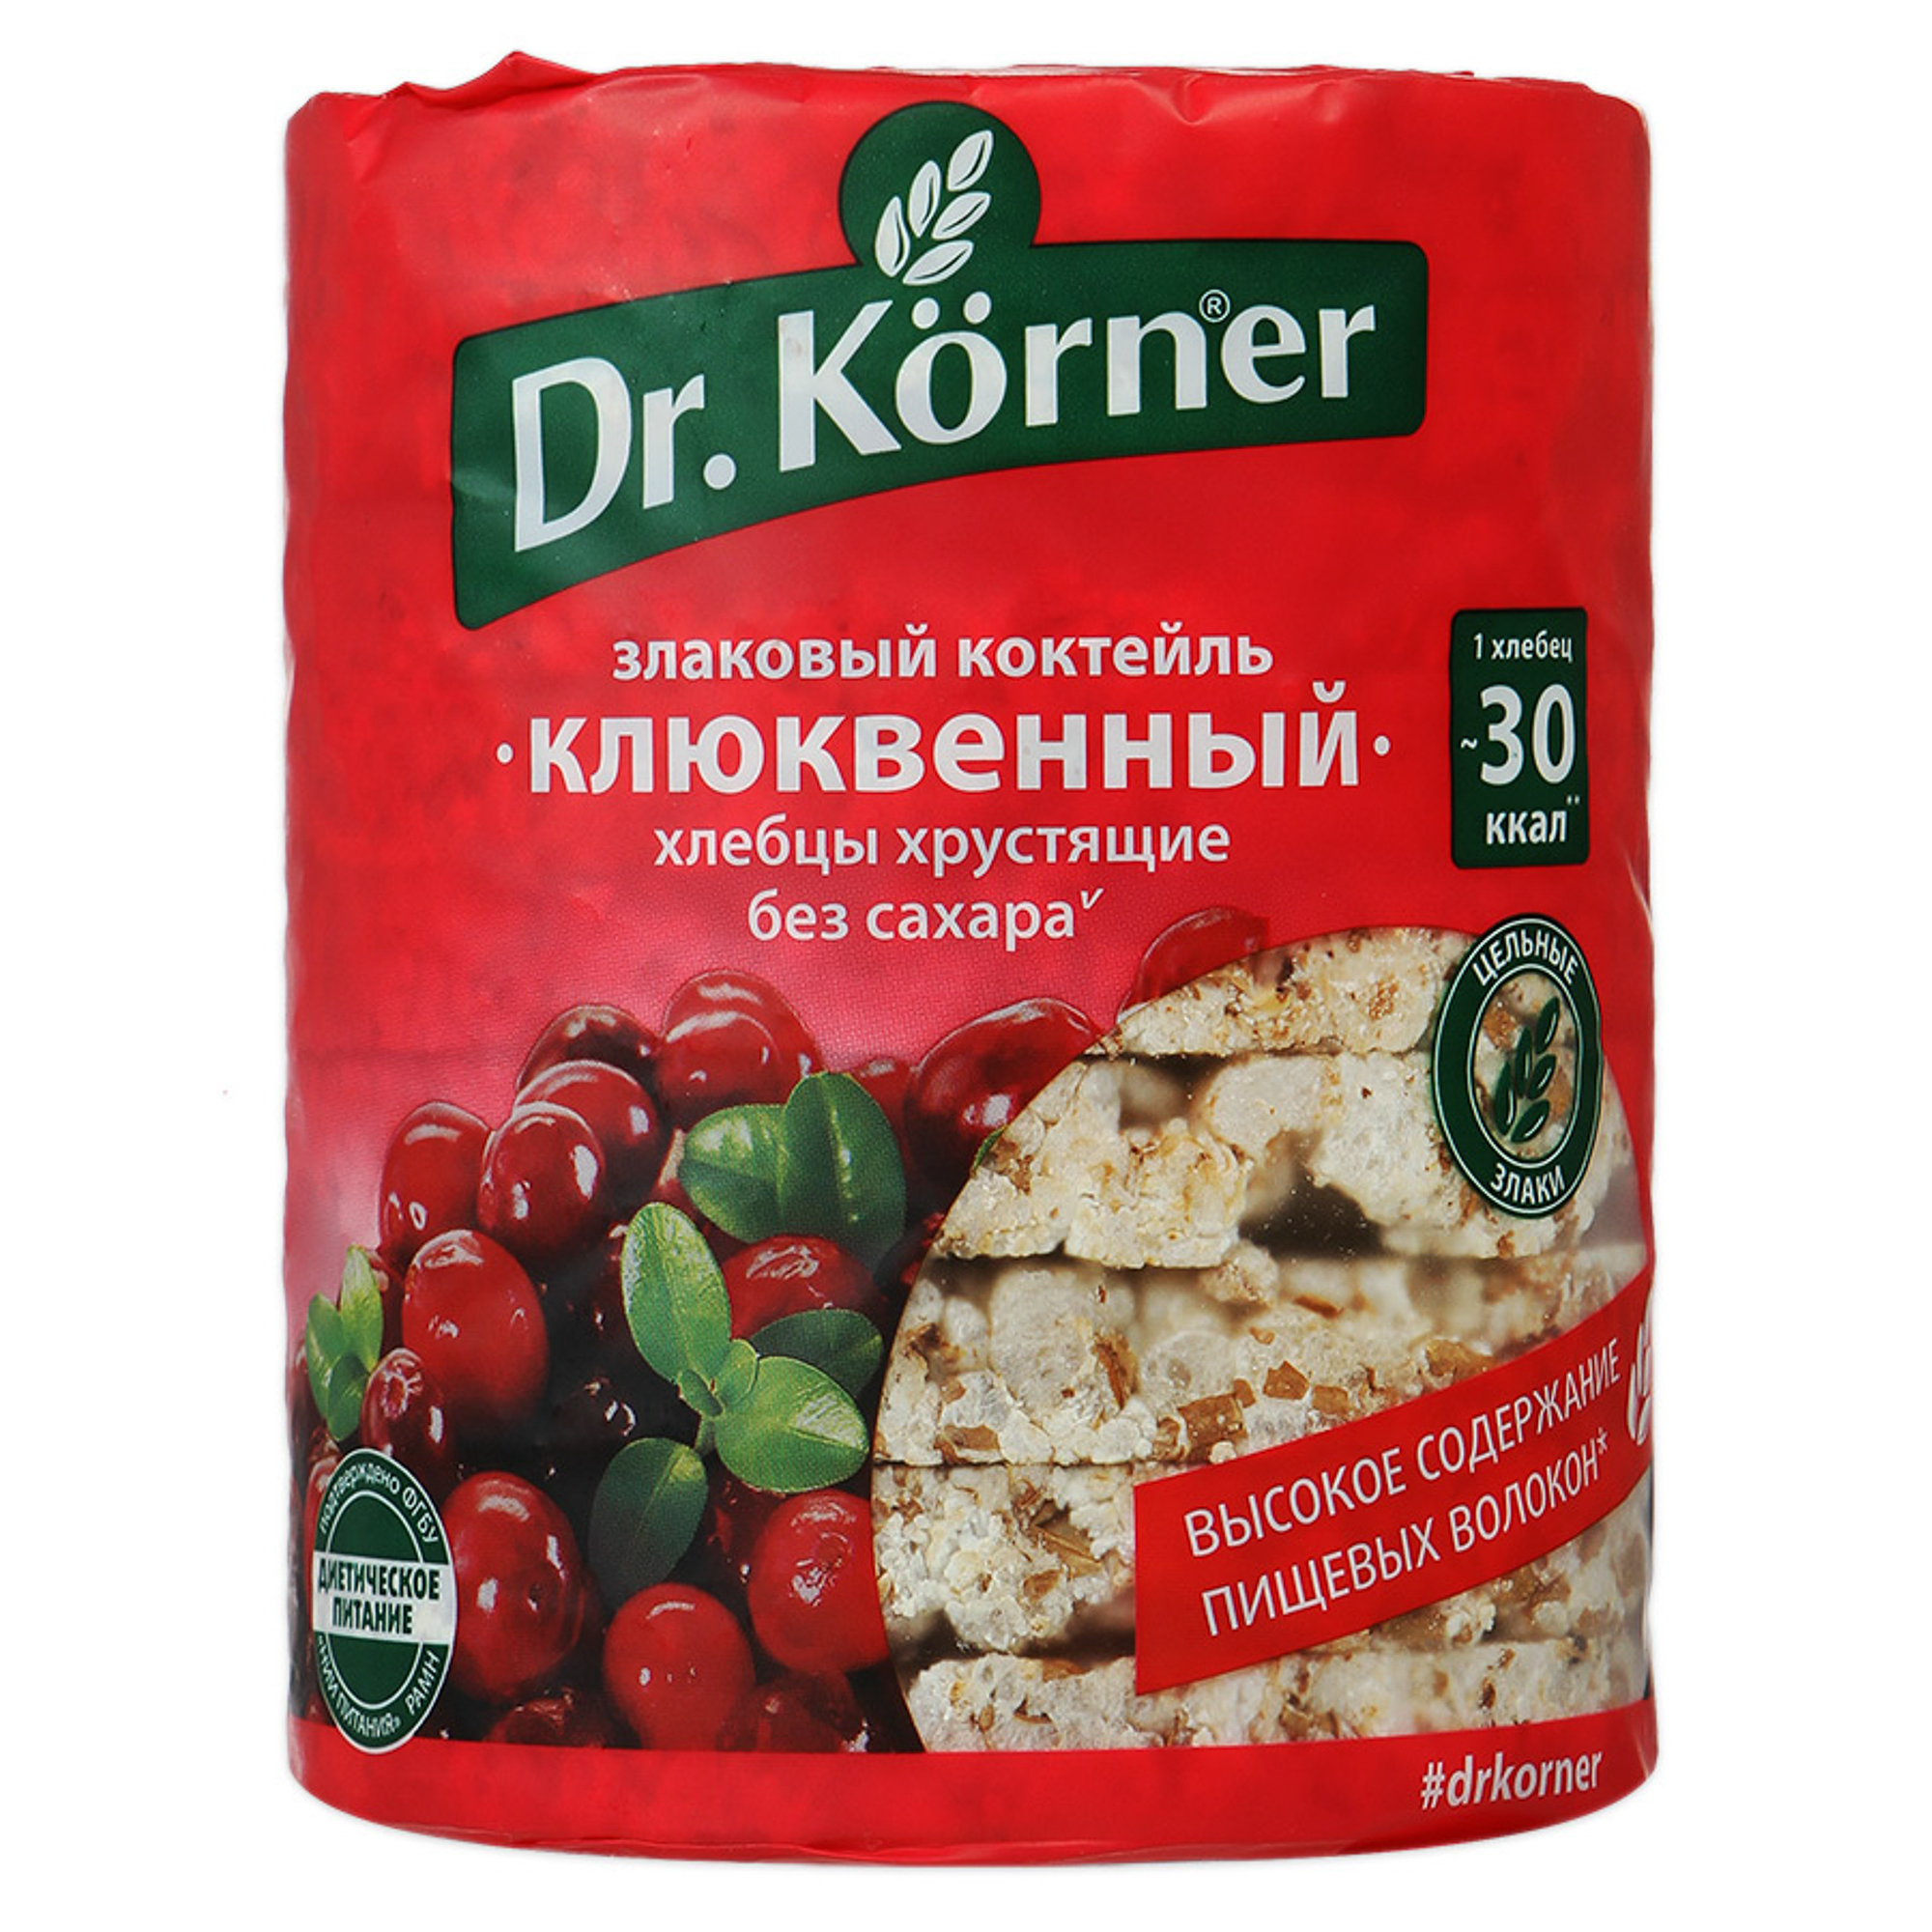 цена Хлебцы хрустящие Dr. Korner Злаковый коктейль клюквенный 100 г